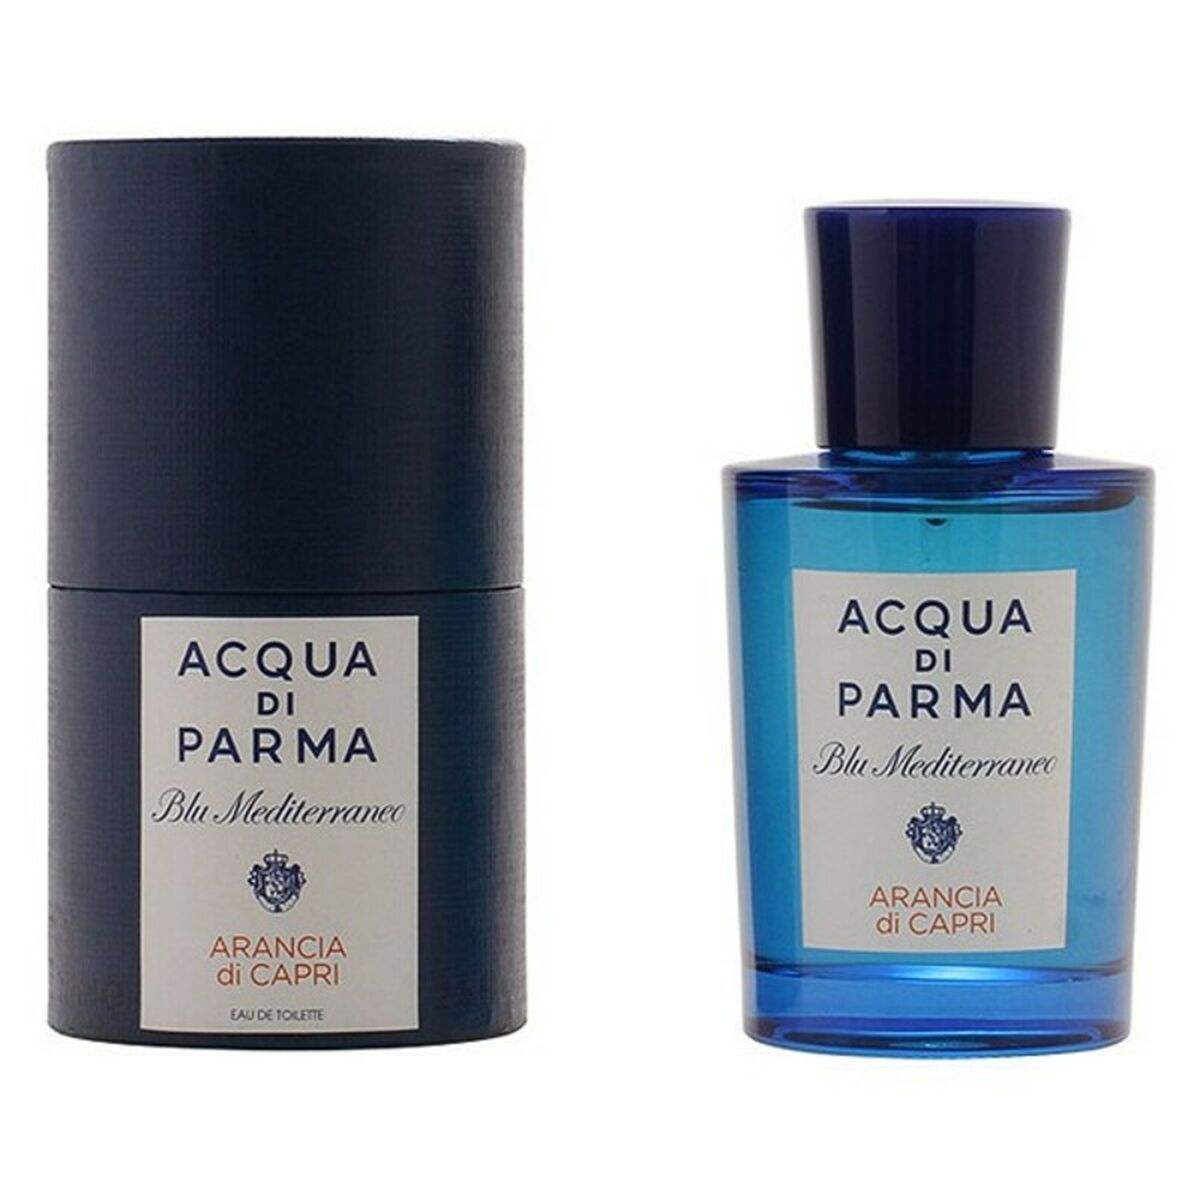 Parfum Homme Acqua Di Parma EDT Blu mediterraneo Arancia Di Capri 75 ml